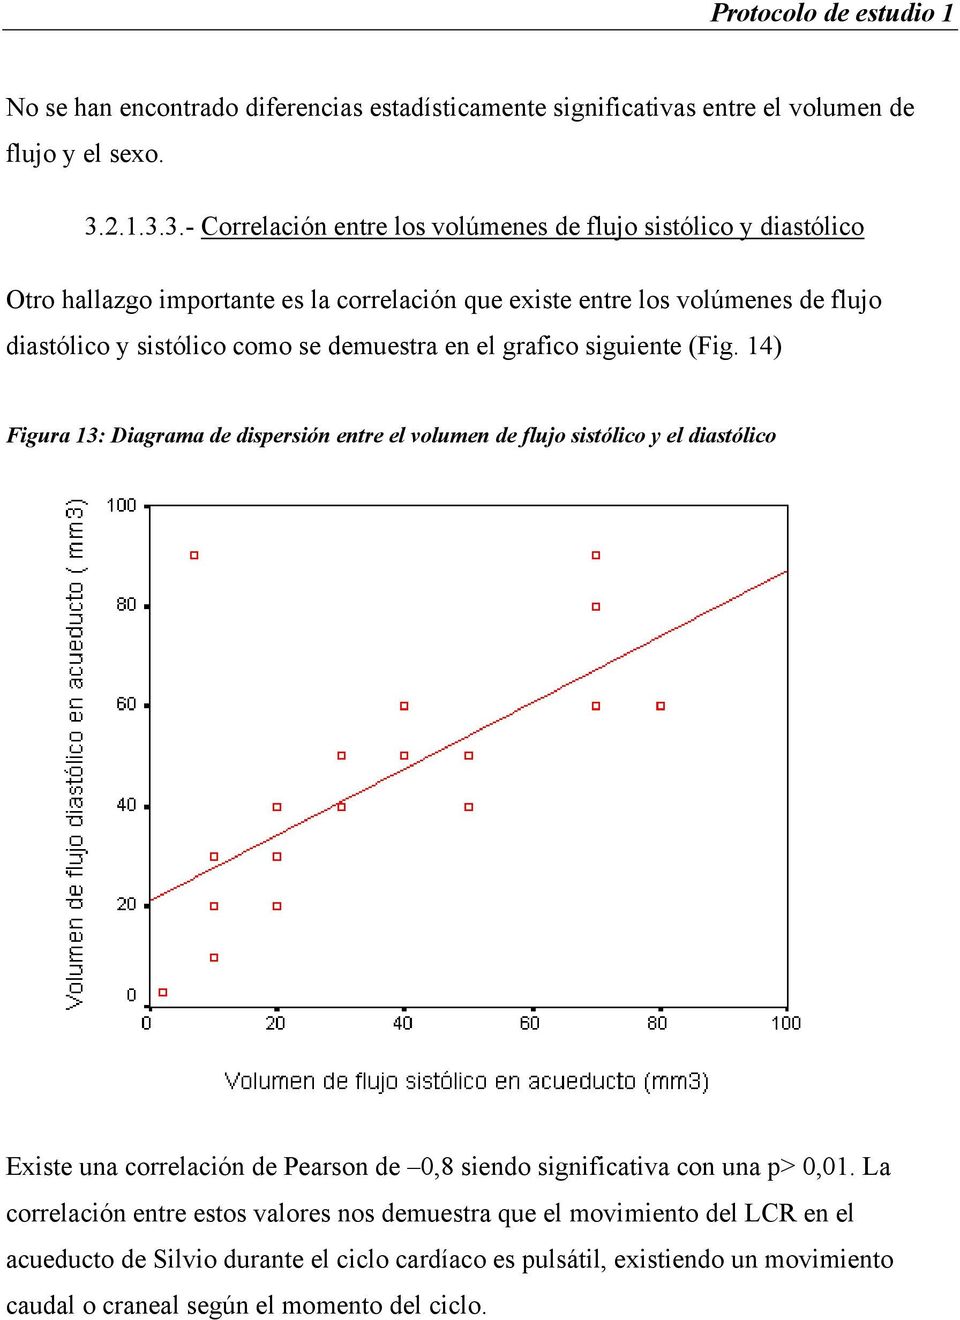 3.- Correlación entre los volúmenes de flujo sistólico y diastólico Otro hallazgo importante es la correlación que existe entre los volúmenes de flujo diastólico y sistólico